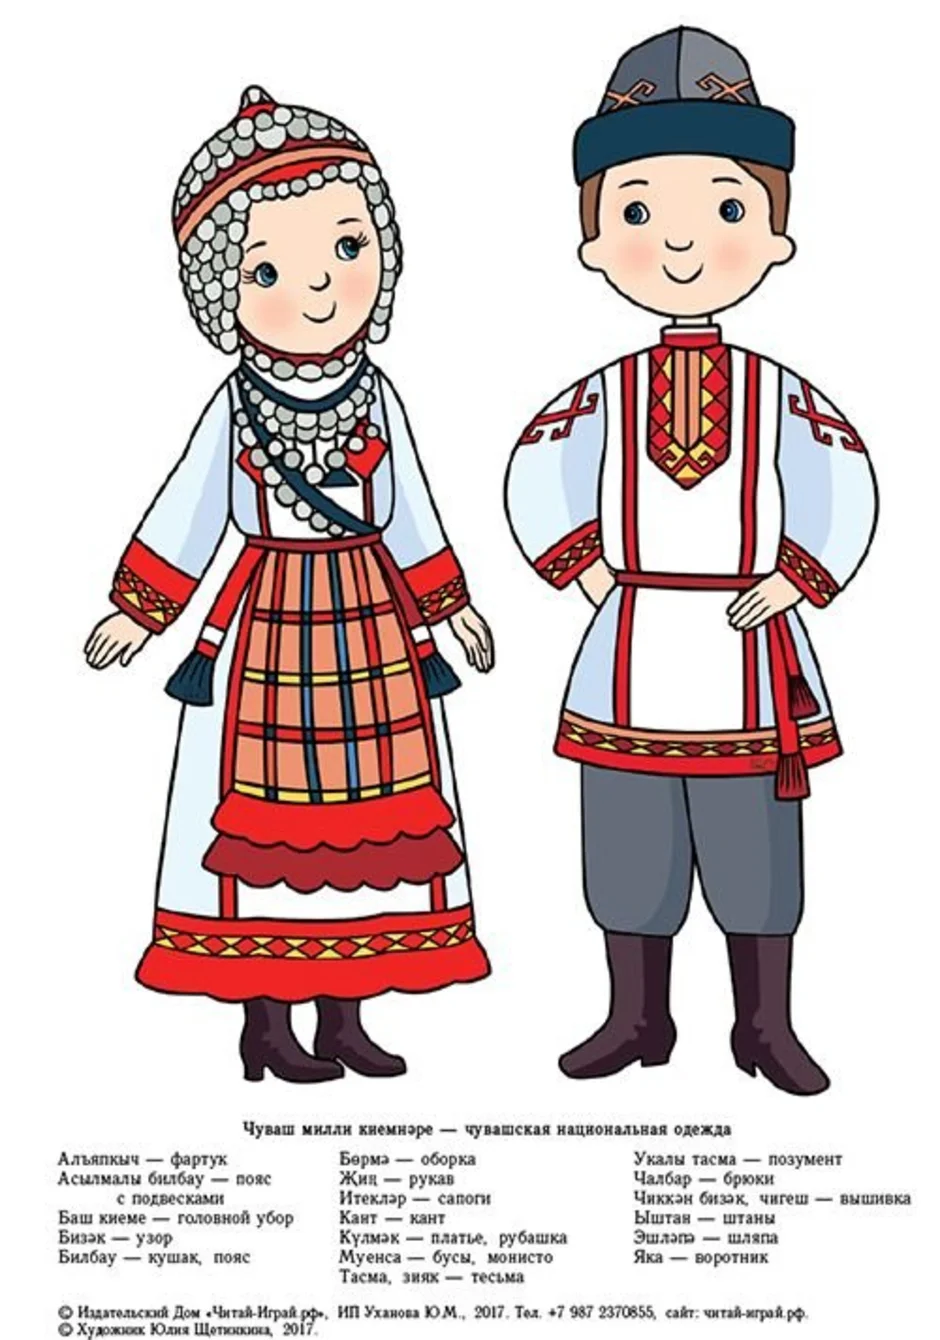 Национальные костюмы народов Поволжья чуваши